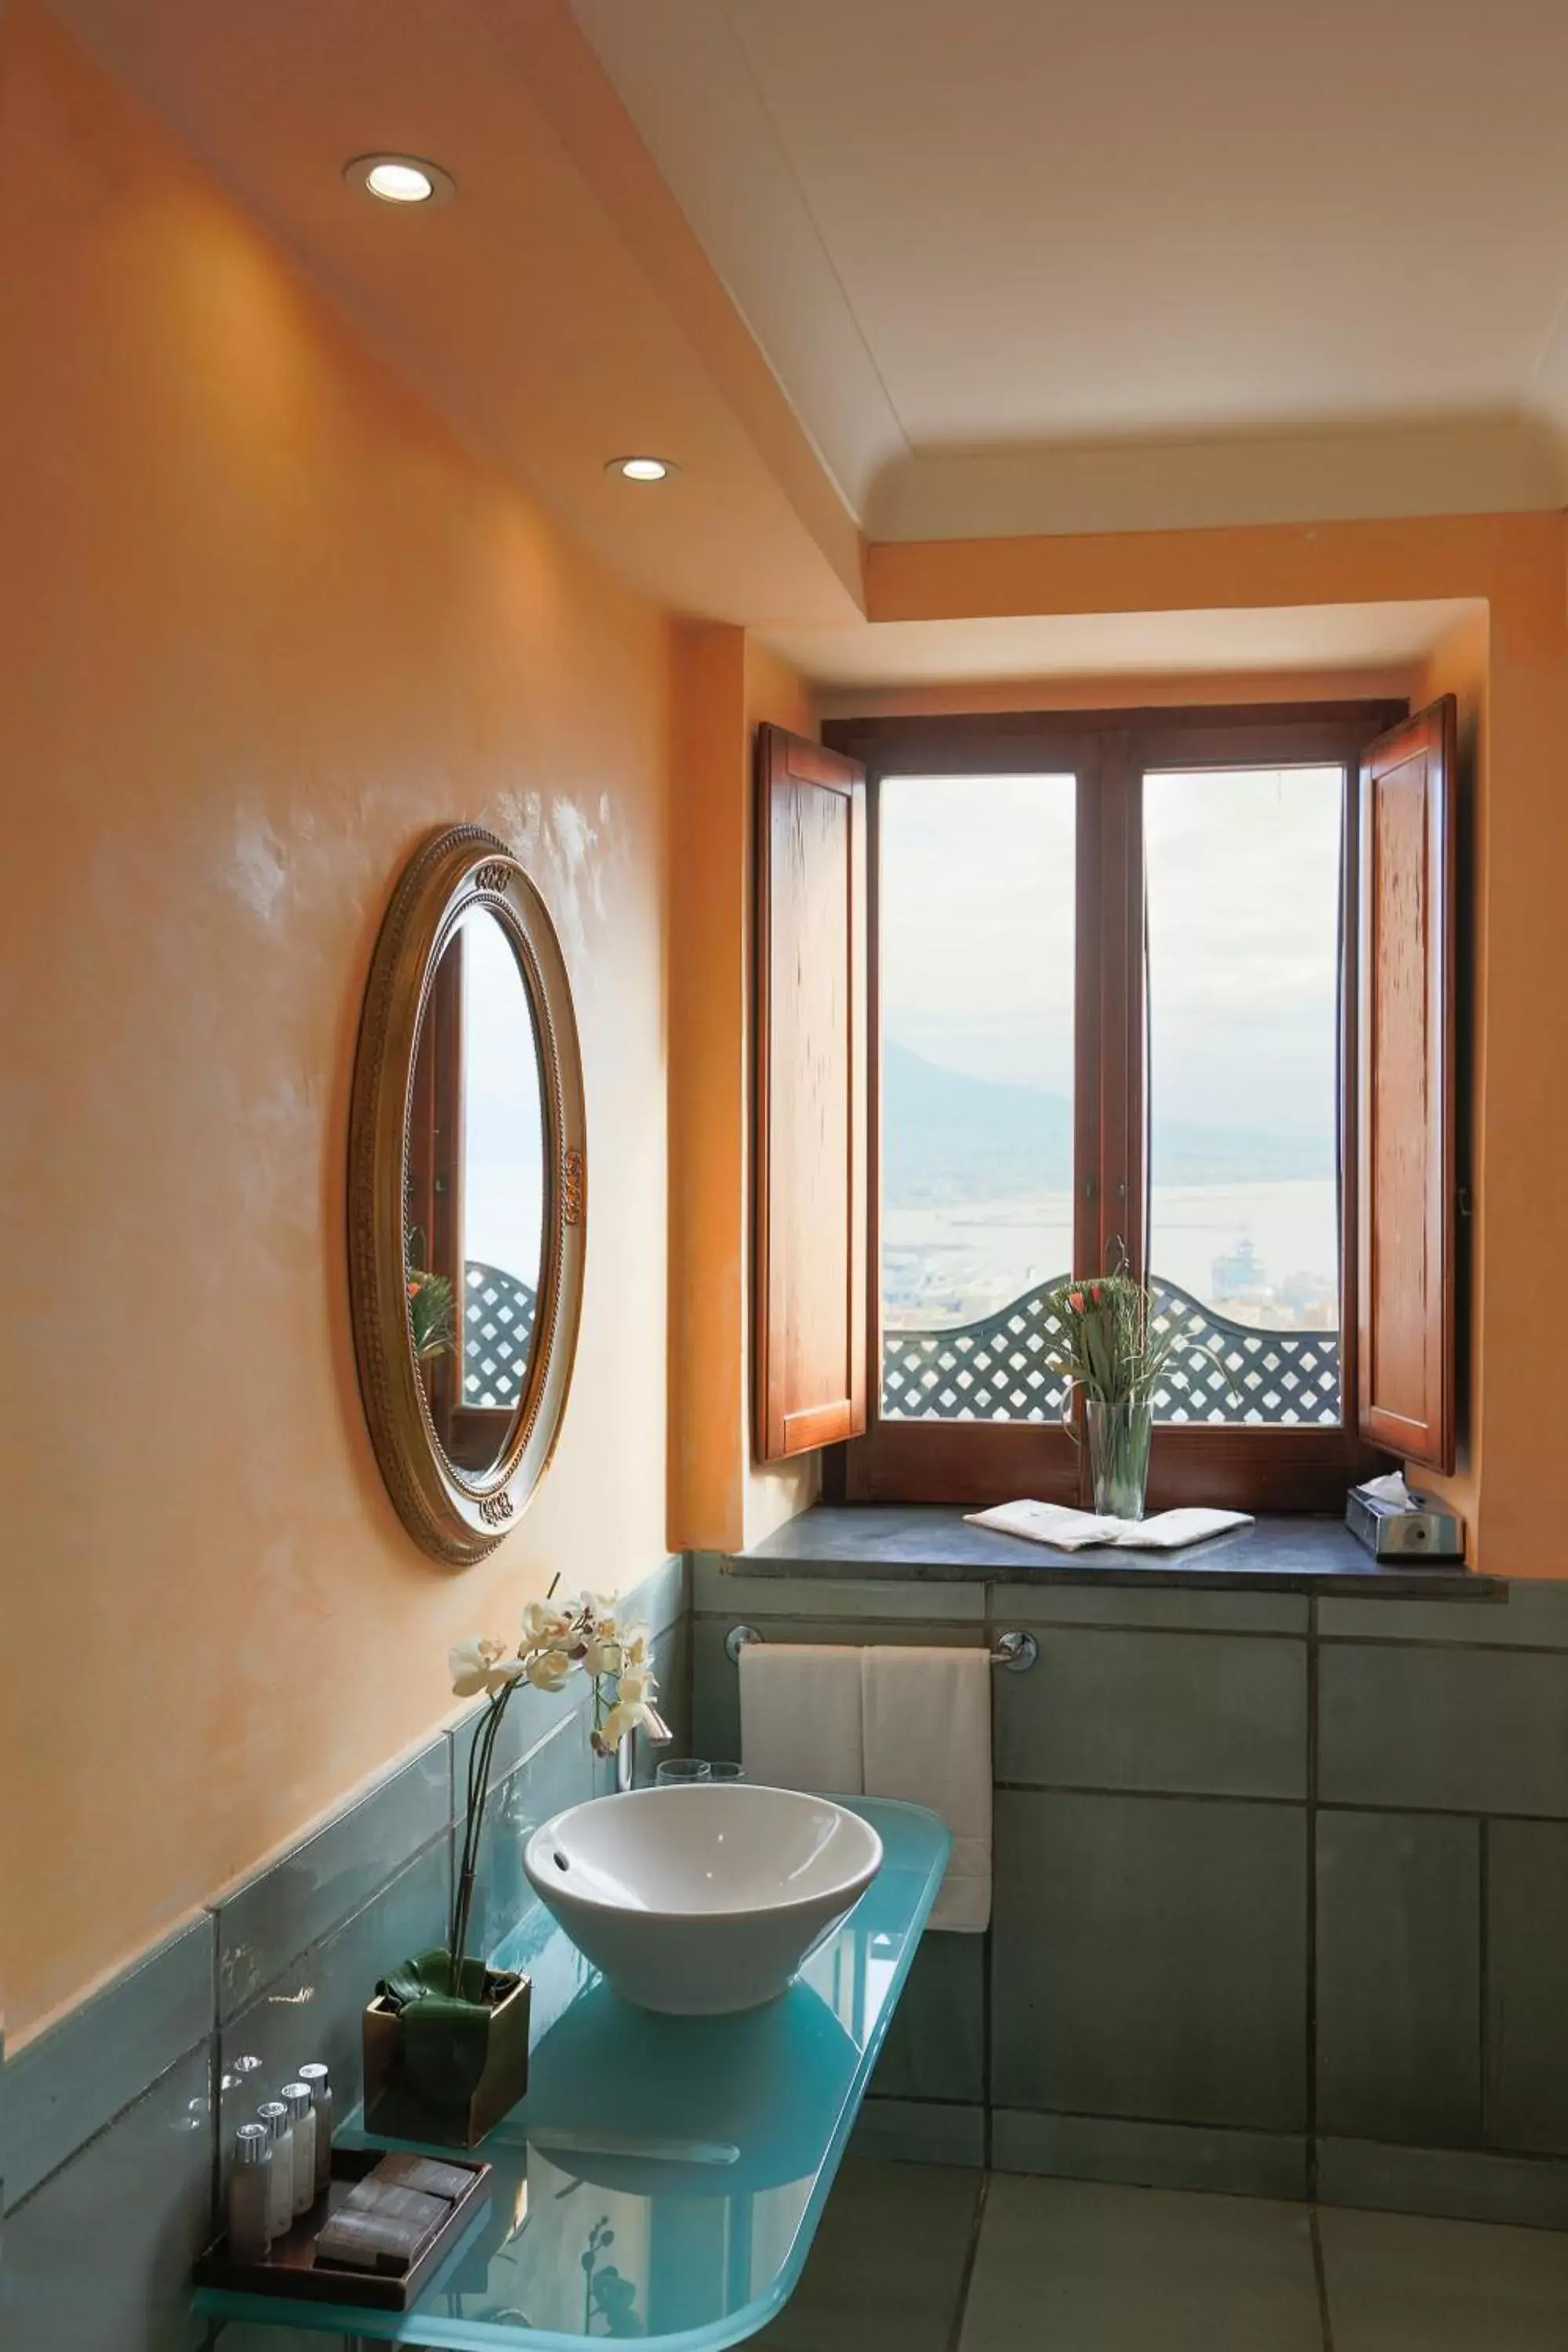 Bathroom in San Francesco al Monte